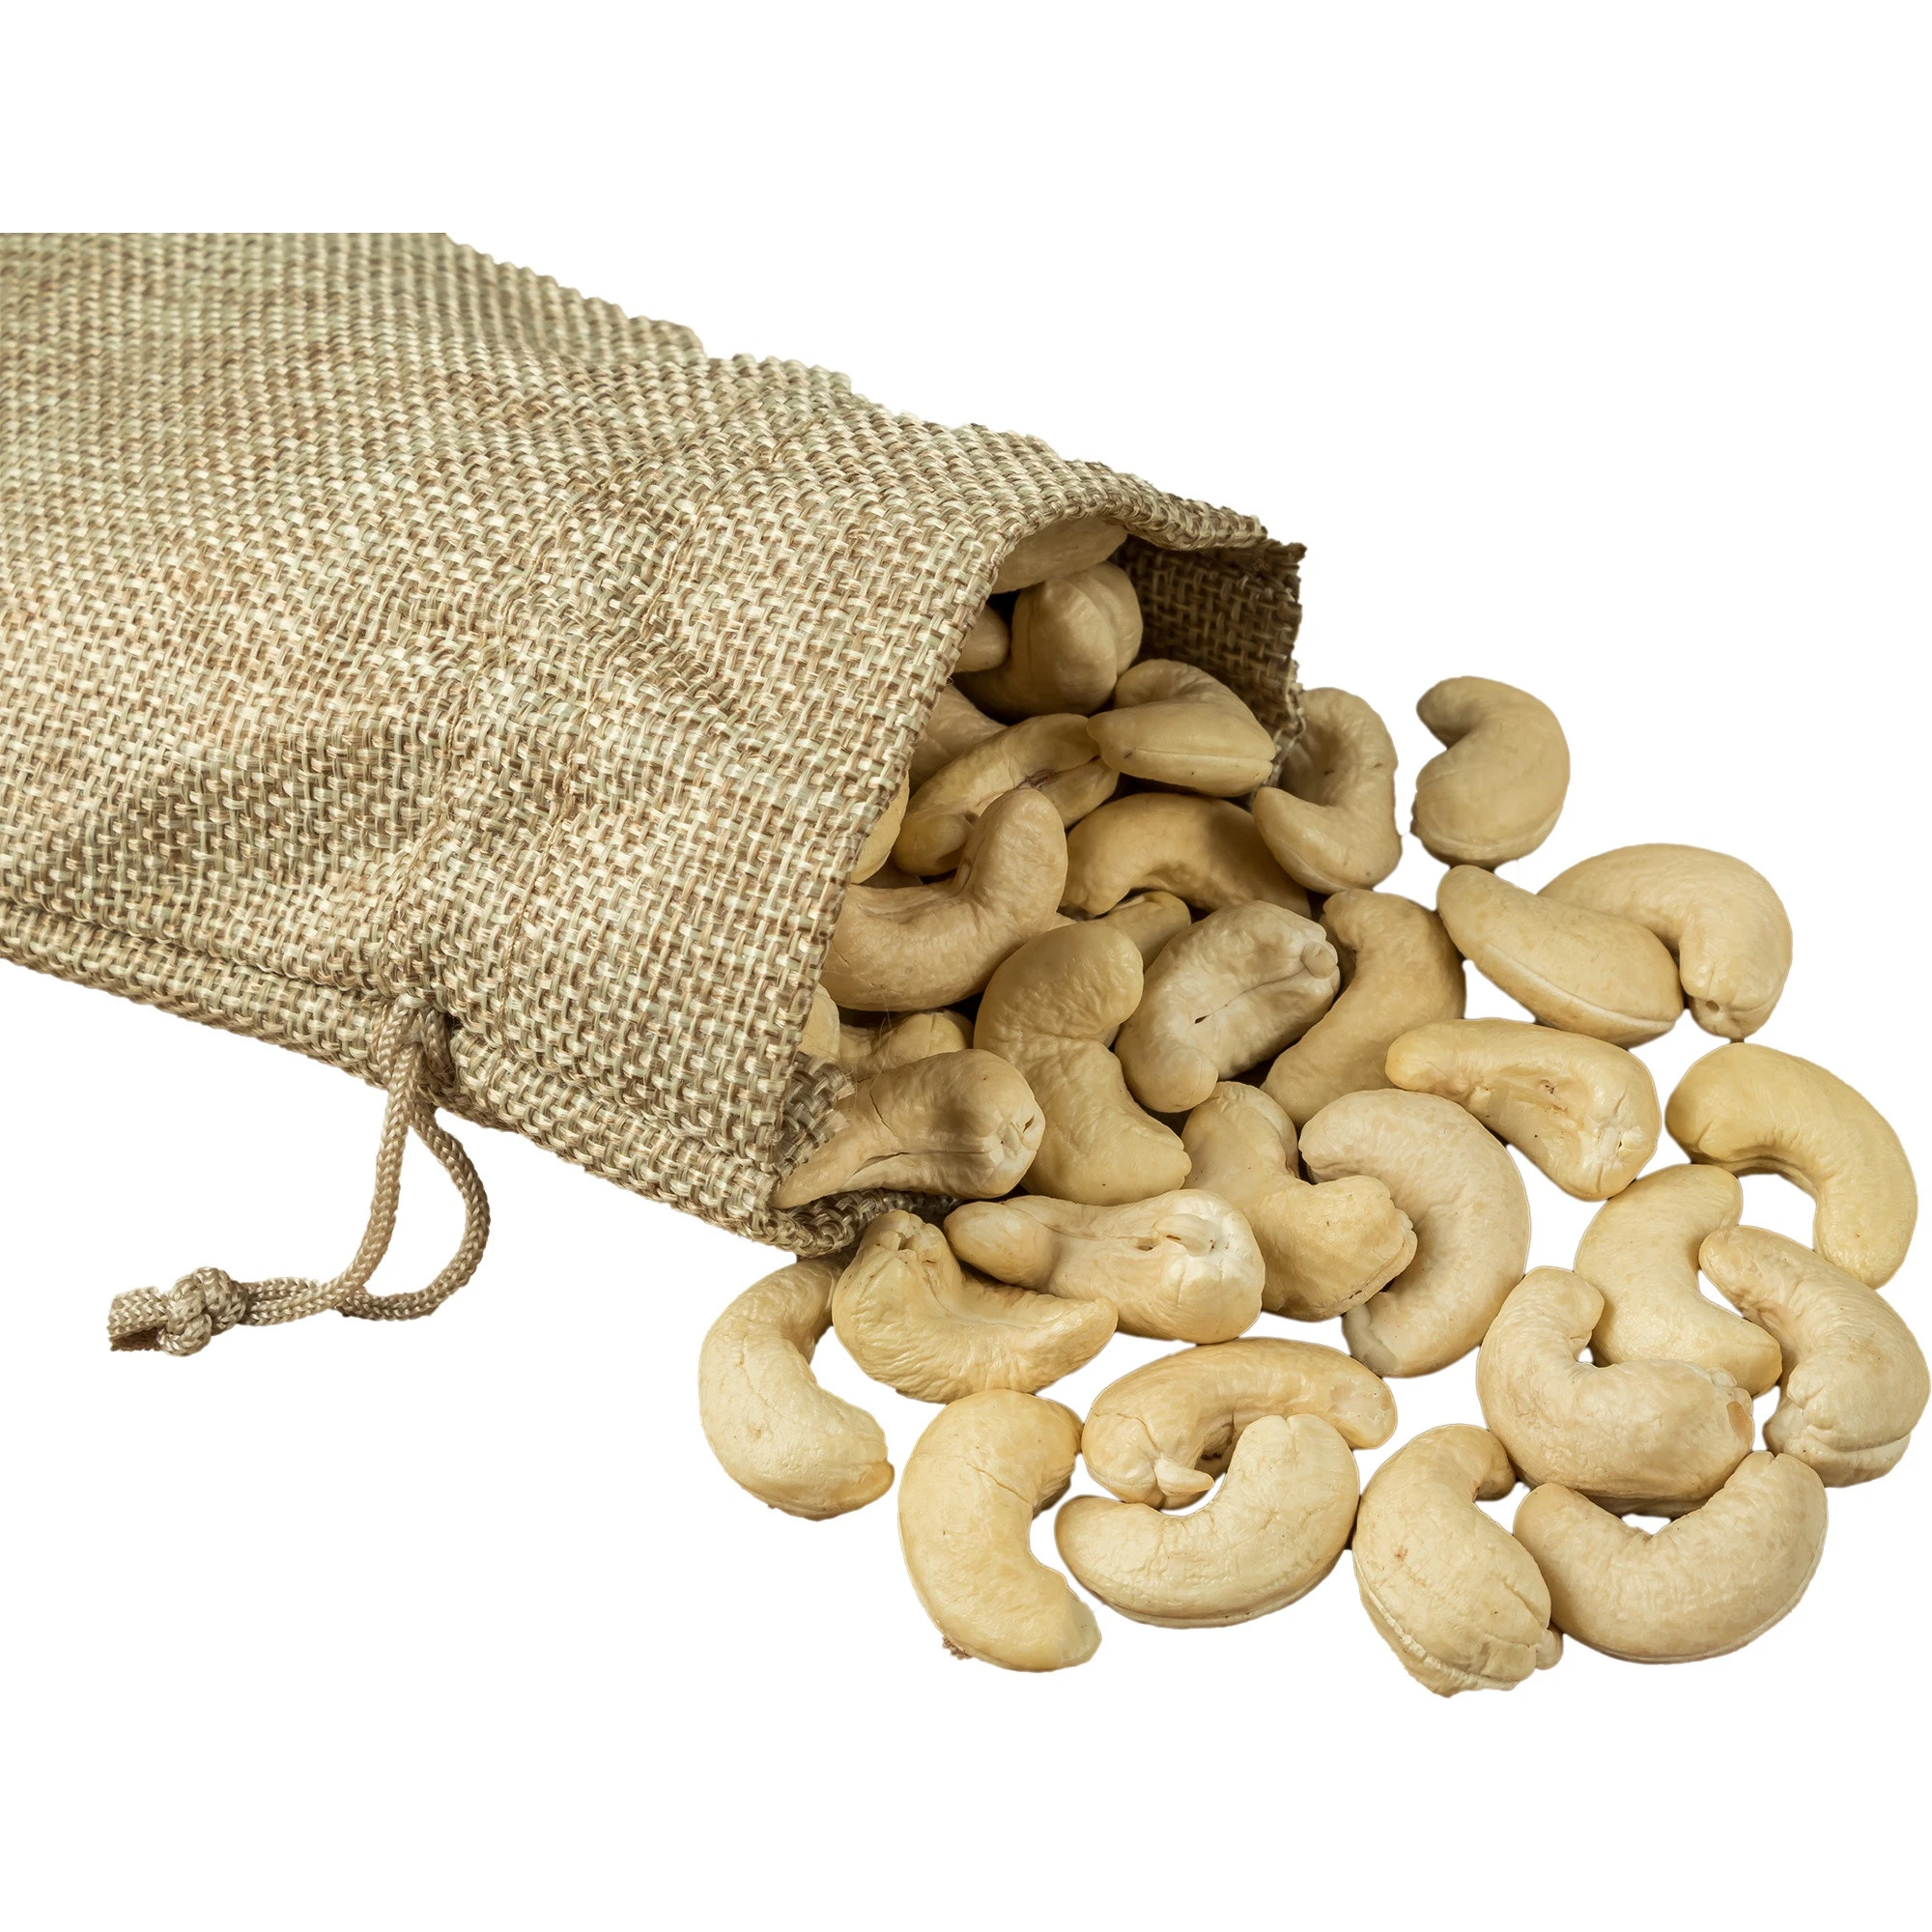 Bulk Premium Quality Raw Cashew Nut